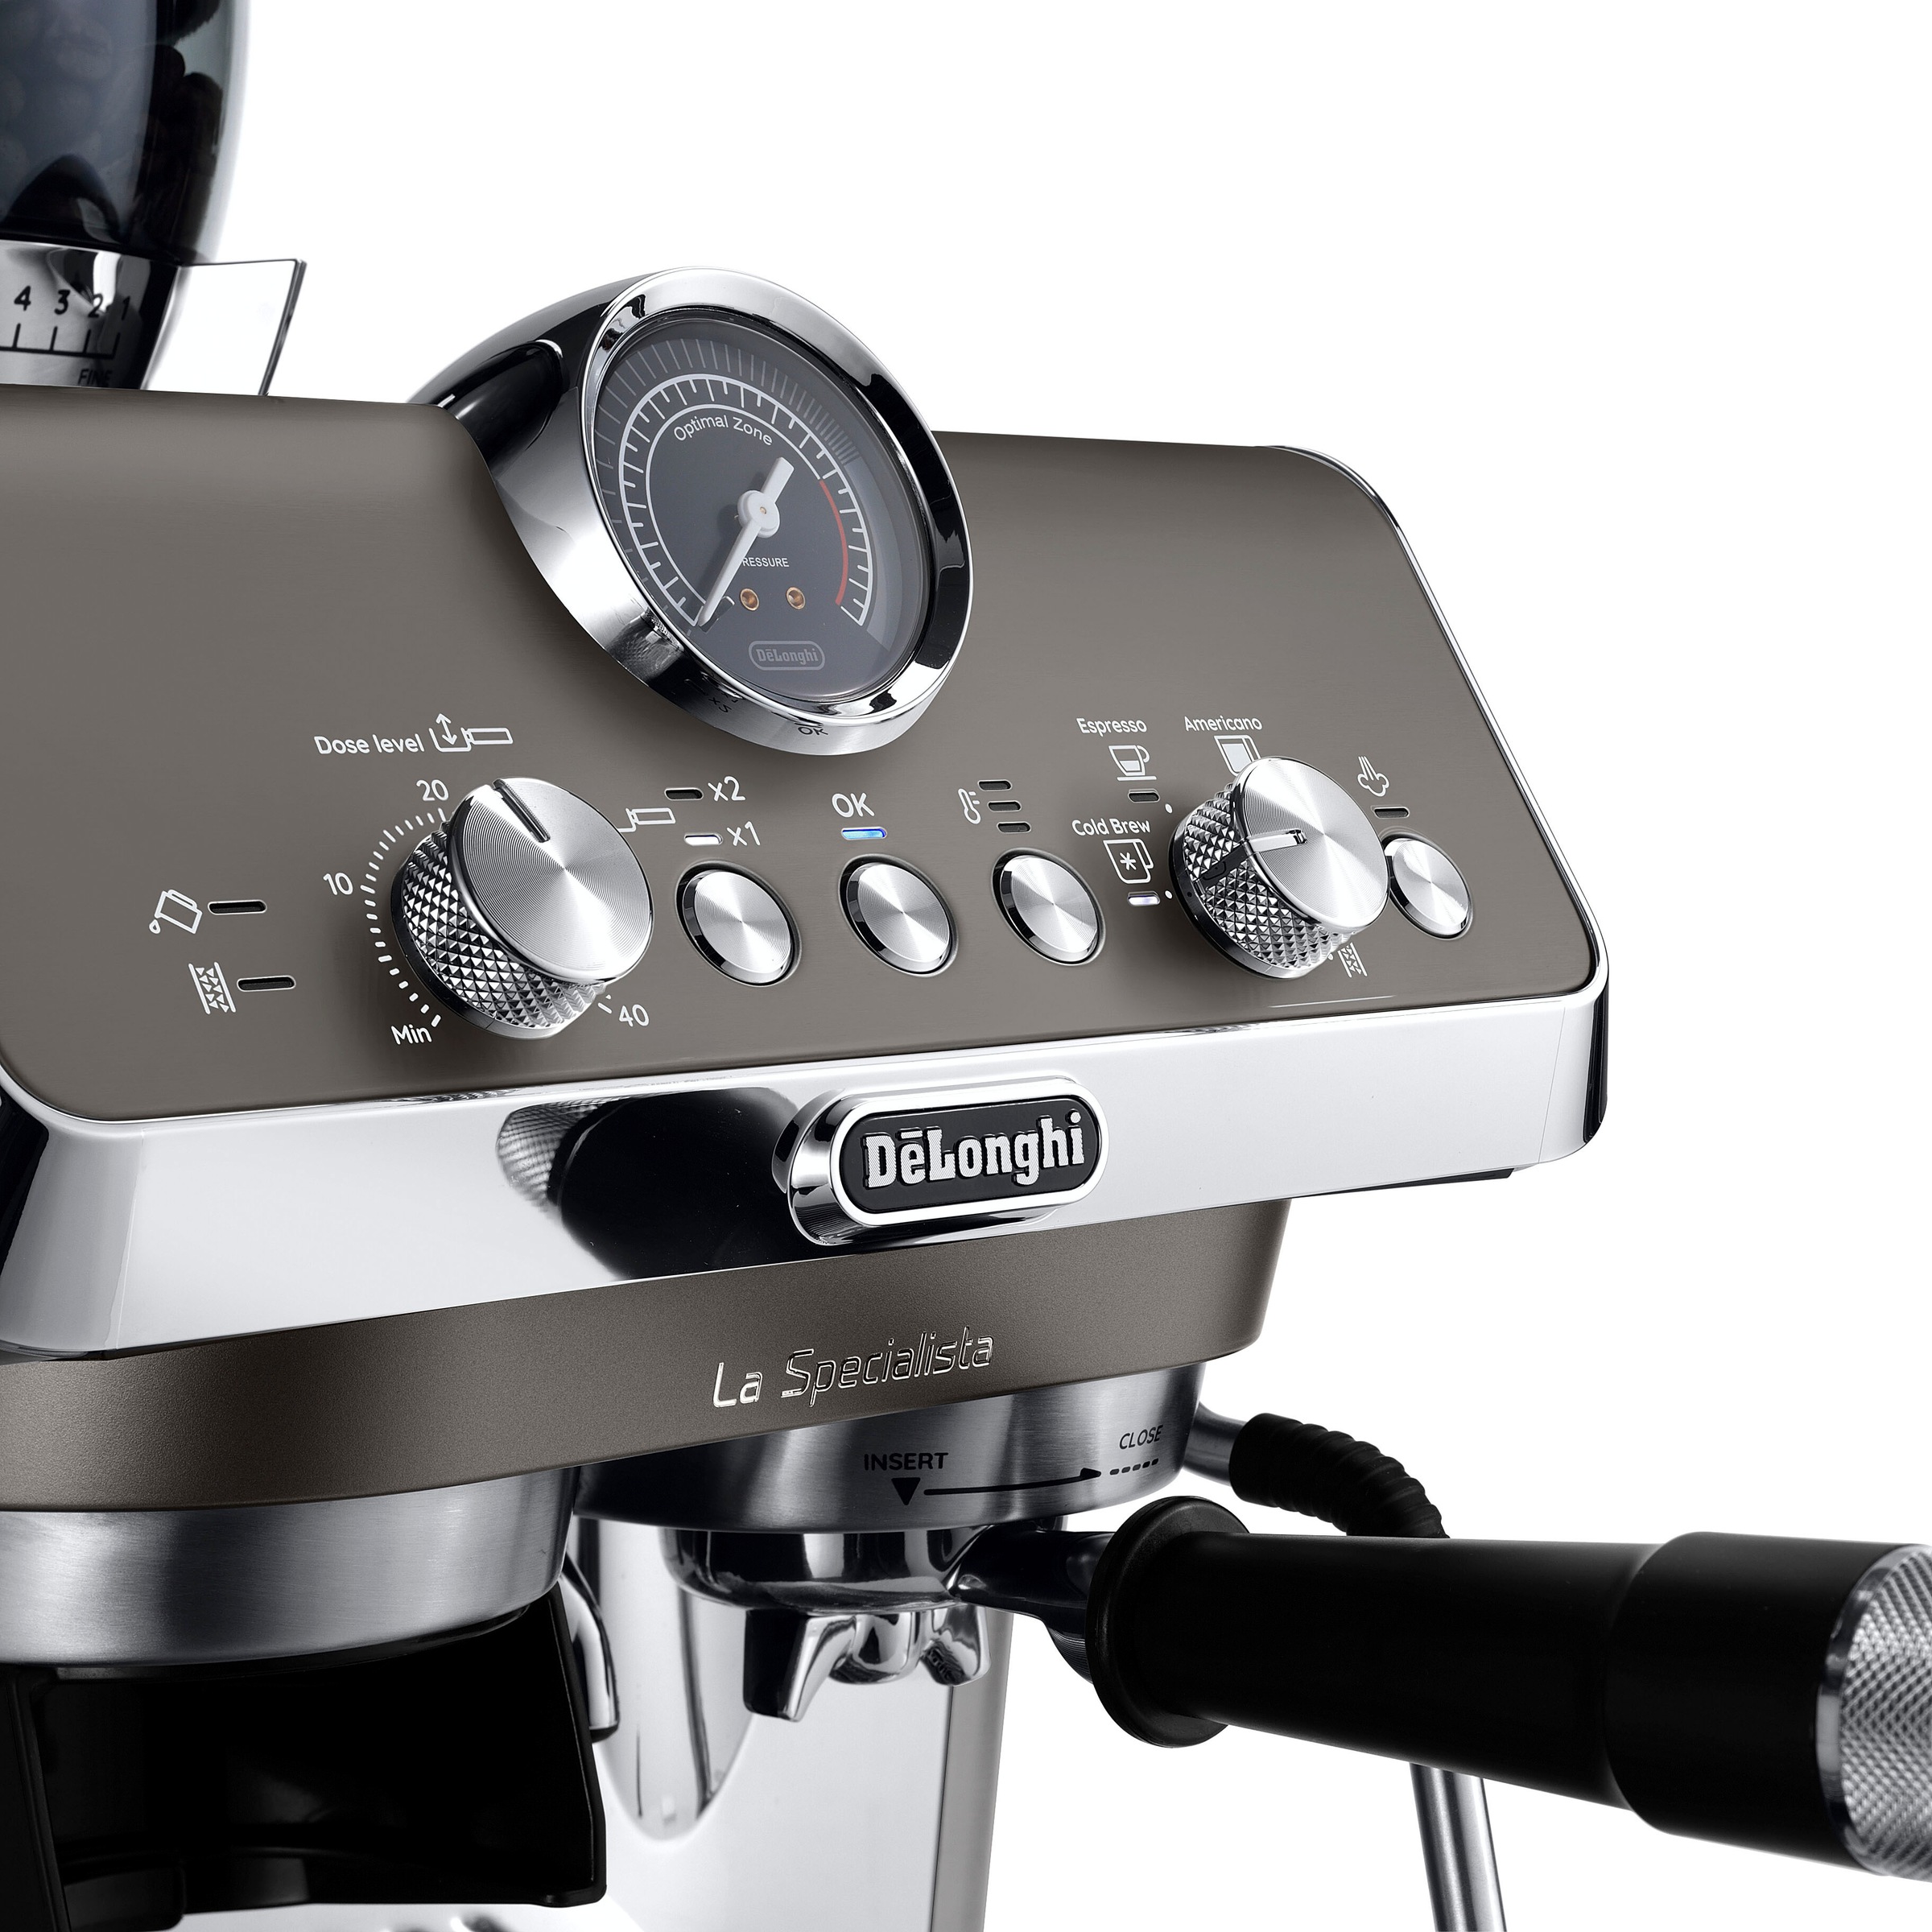 De'Longhi Espressomaschine »La Specialista Arte Evo Cold Brew EC9255.T«, Siebträger